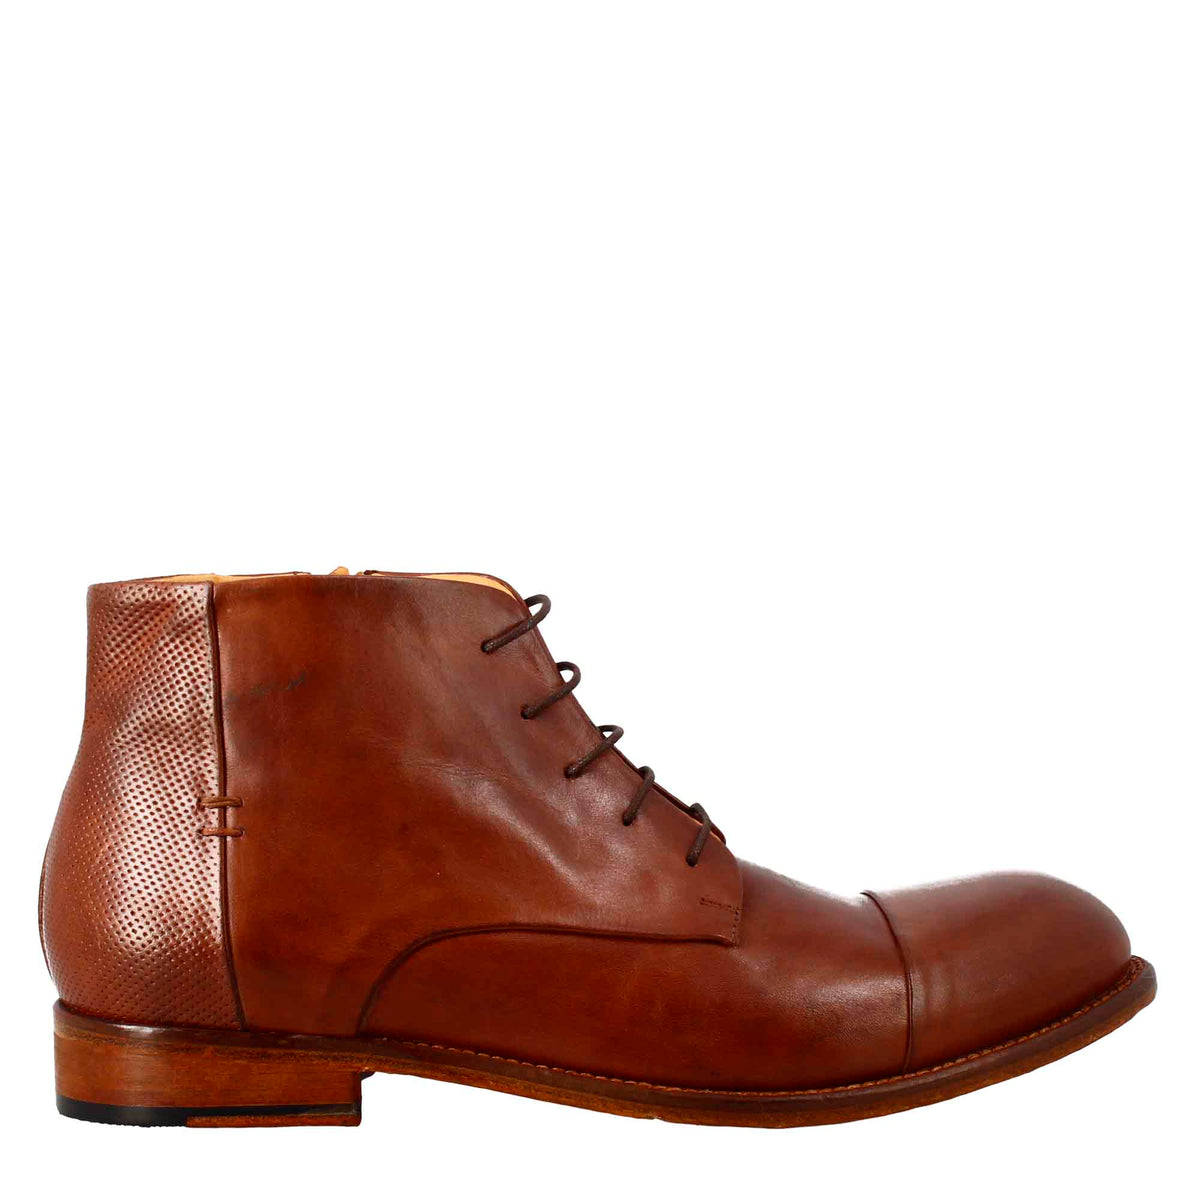 Men's elegant vintage brown leather ankle boot